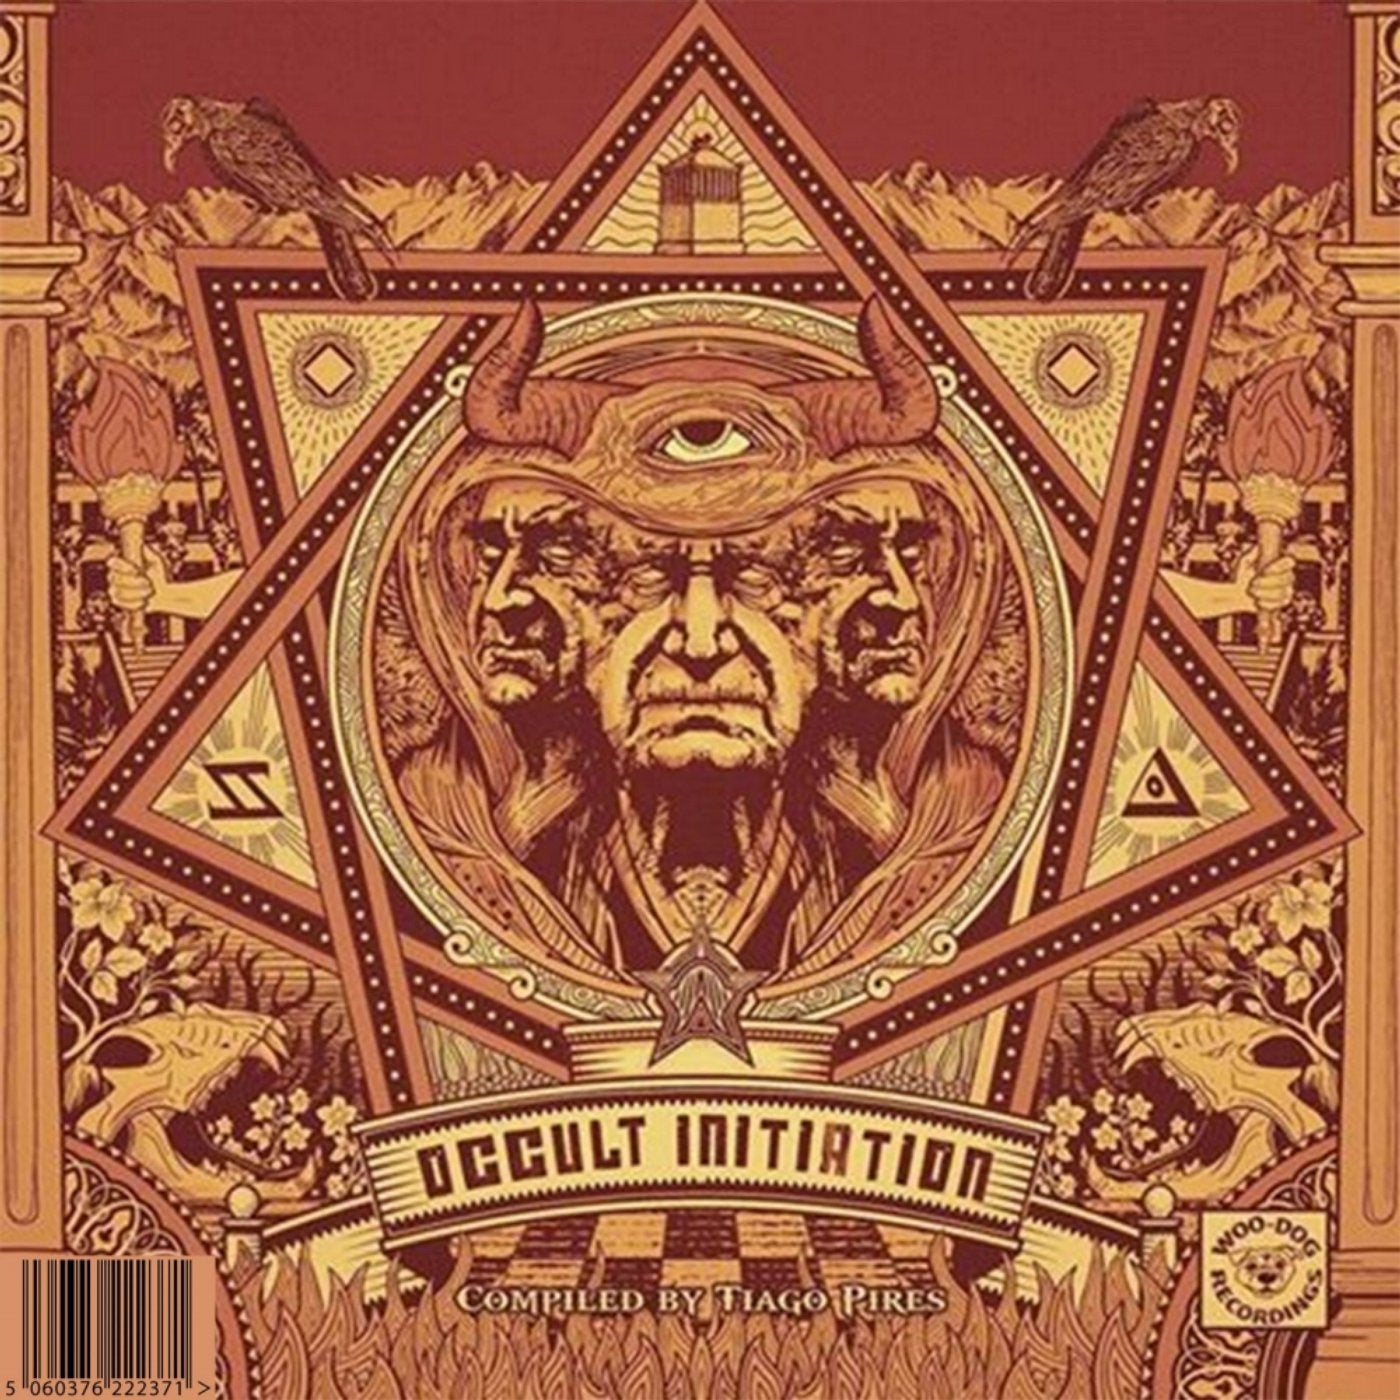 Occult Initiation, Pt. 2